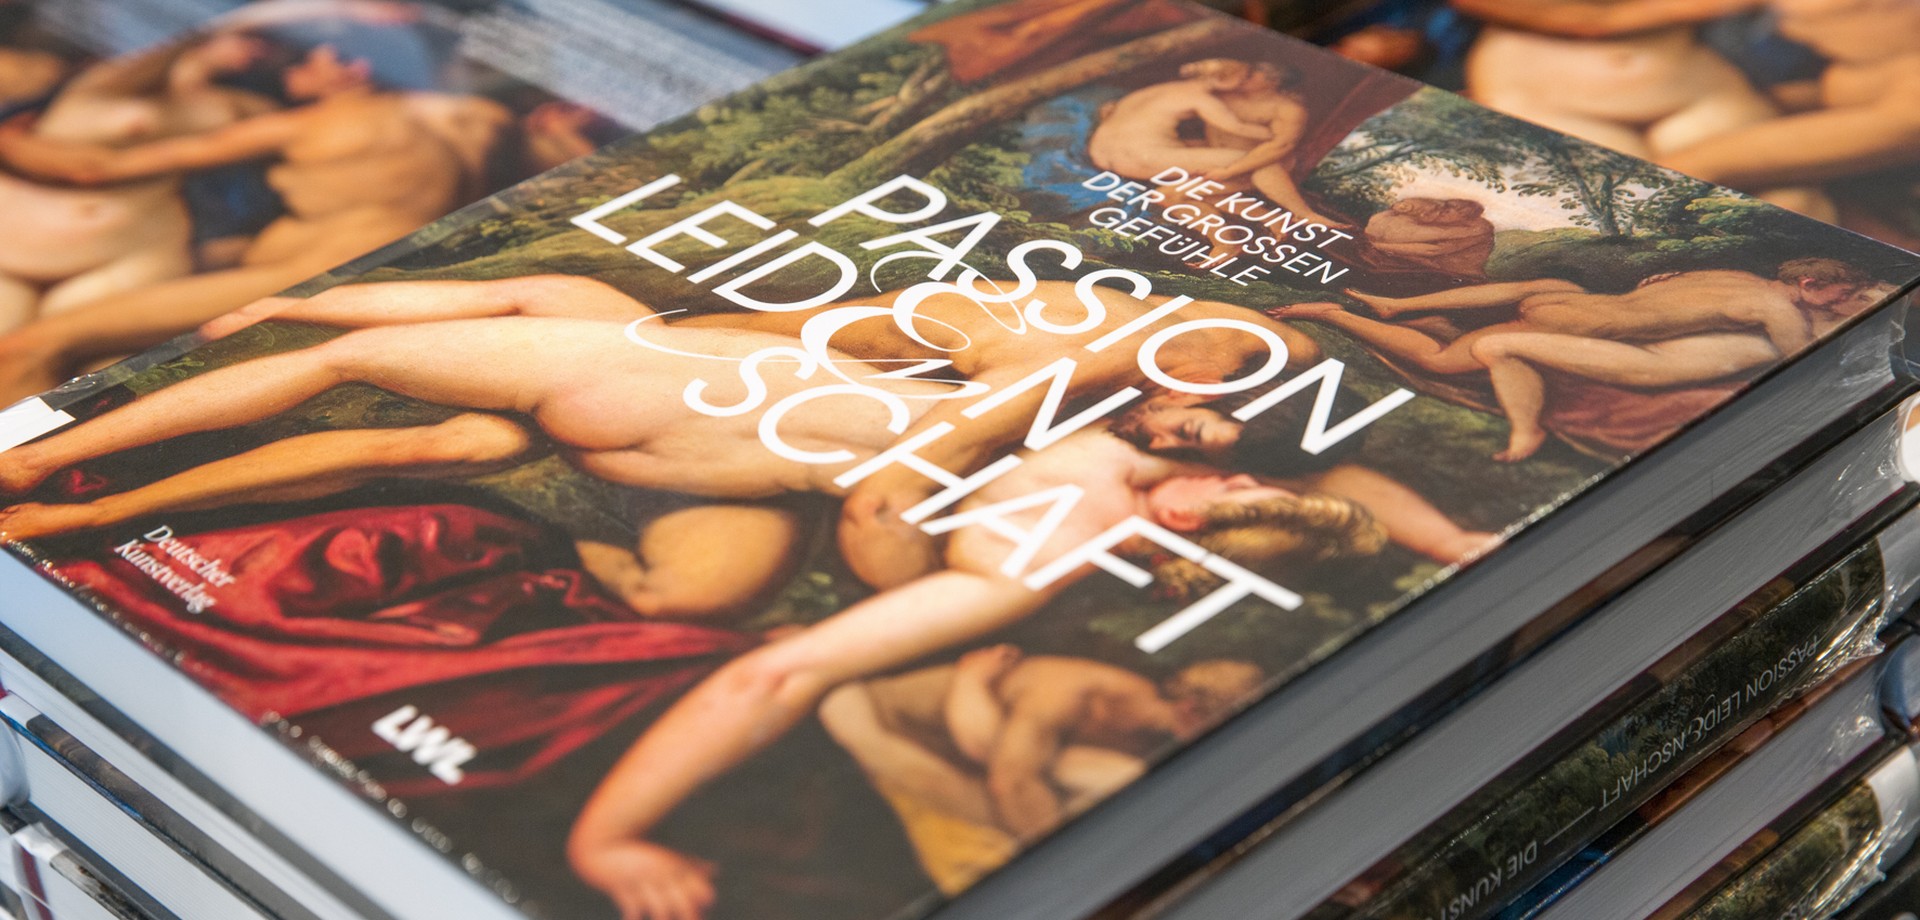 Blick auf einen Stapel Kataloge der Ausstellung Passion Leidenschaft